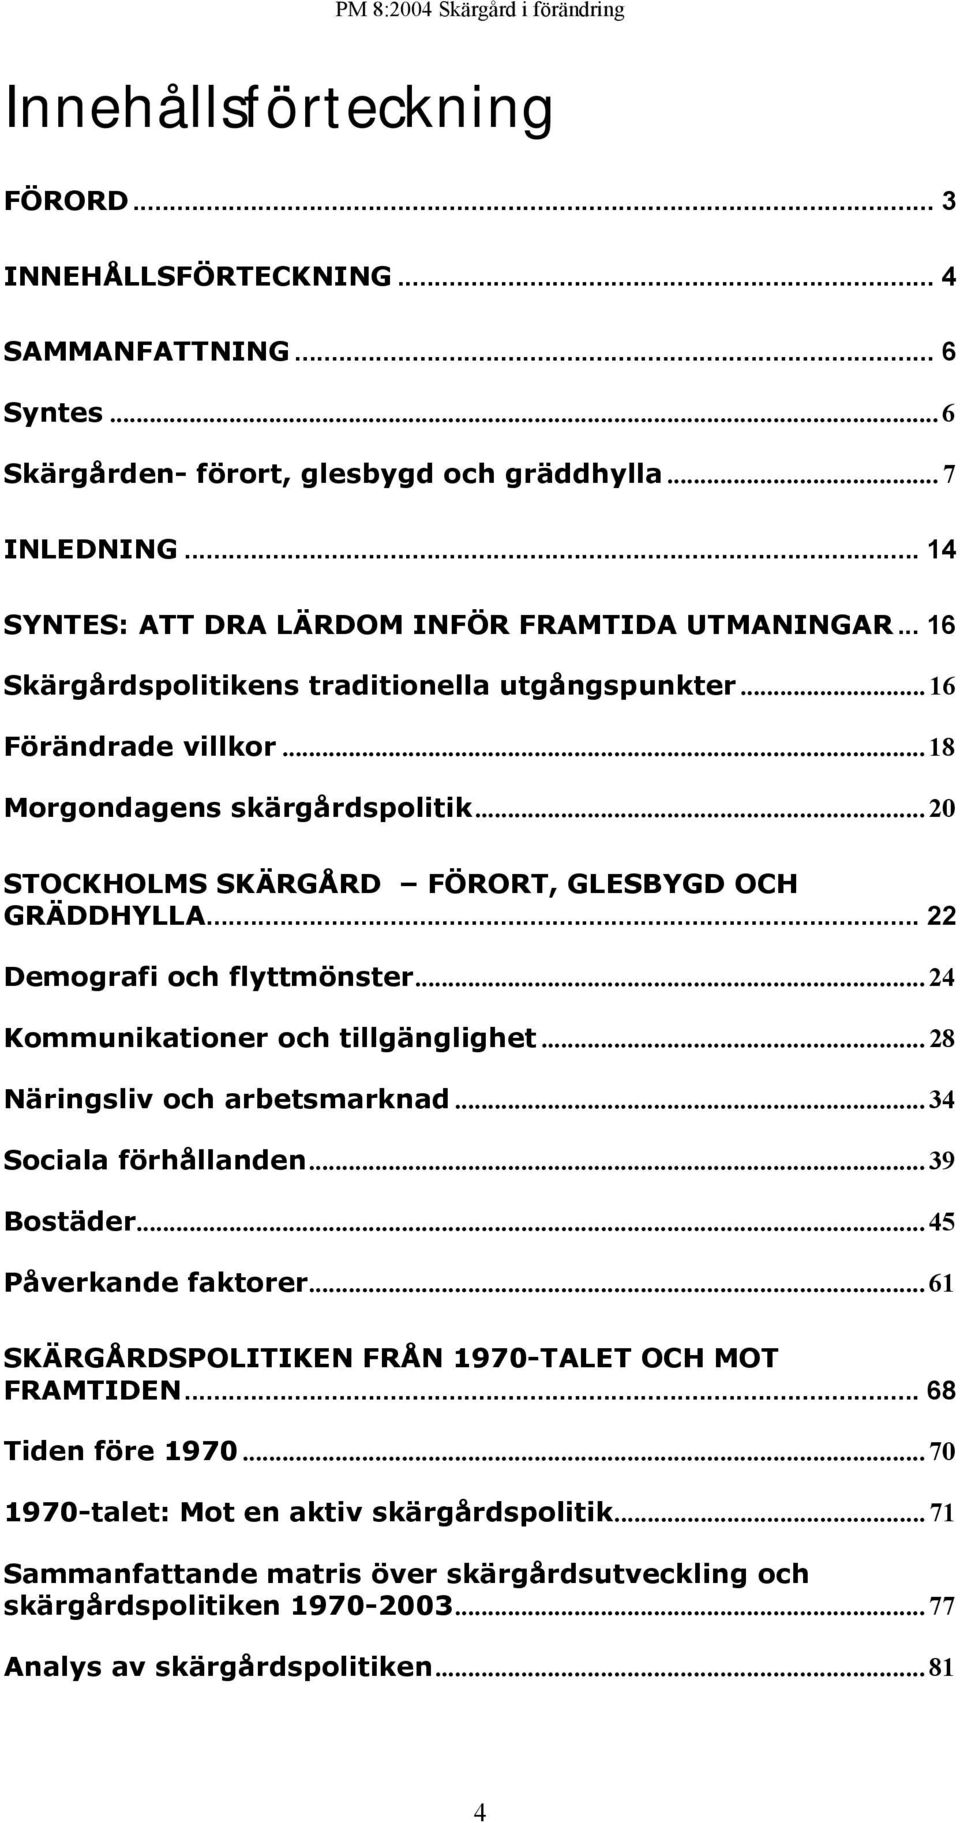 .. 20 STOCKHOLMS SKÄRGÅRD FÖRORT, GLESBYGD OCH GRÄDDHYLLA... 22 Demografi och flyttmönster... 24 Kommunikationer och tillgänglighet... 28 Näringsliv och arbetsmarknad... 34 Sociala förhållanden.